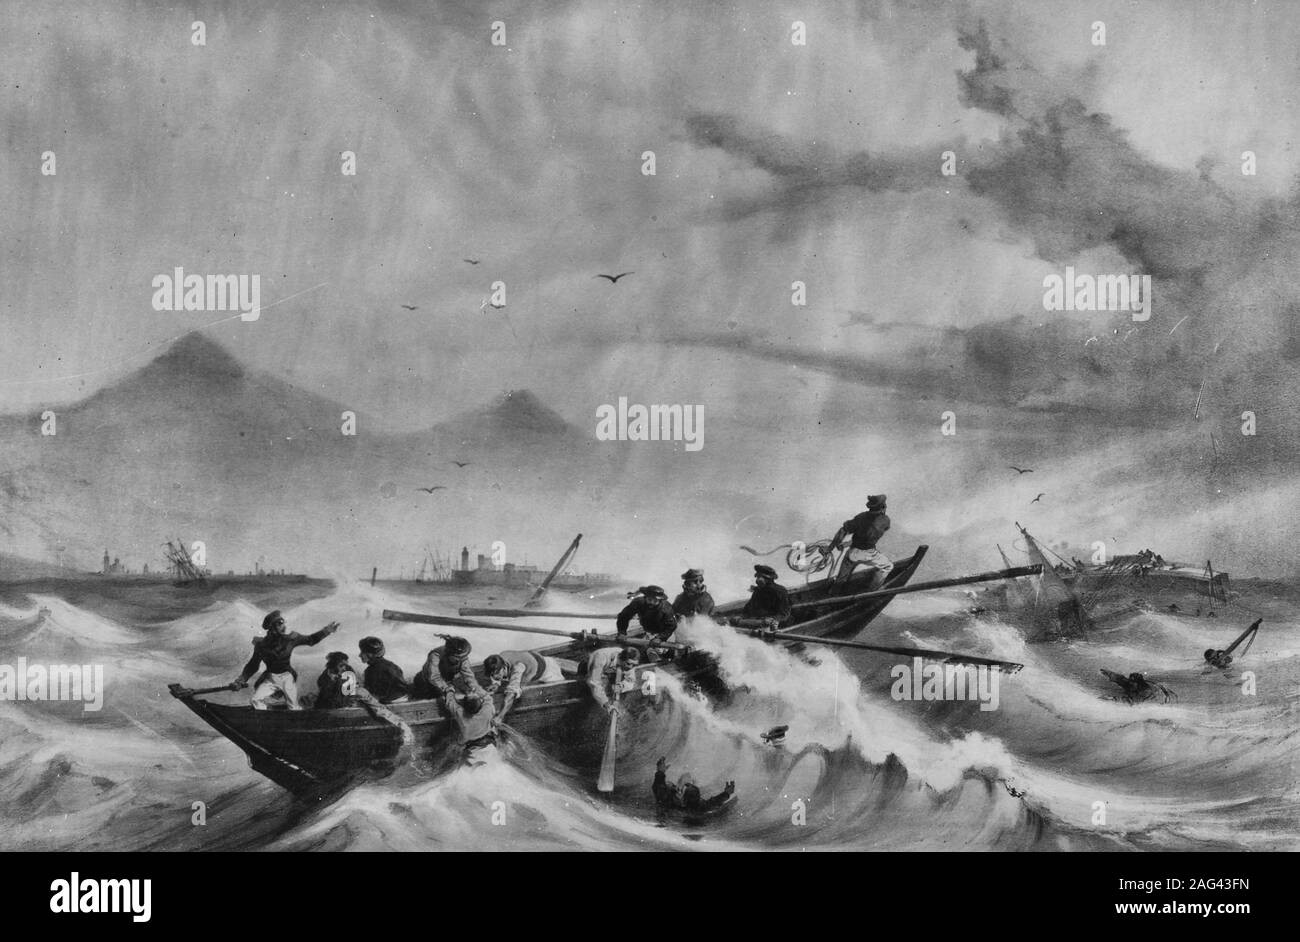 Verlust der USS Somers, 8. Dezember 1846 - Lithographie von A. Mayer, Paris, zeigt eine whaleboat Crew von der Französischen Marine brig Le Mercure Rettung von Überlebenden der Gekentert Somers, Vera Cruz, Mexiko. Somers ist in der rechten Hintergrund sichtbar, auf ihrem Strahl endet. Stockfoto